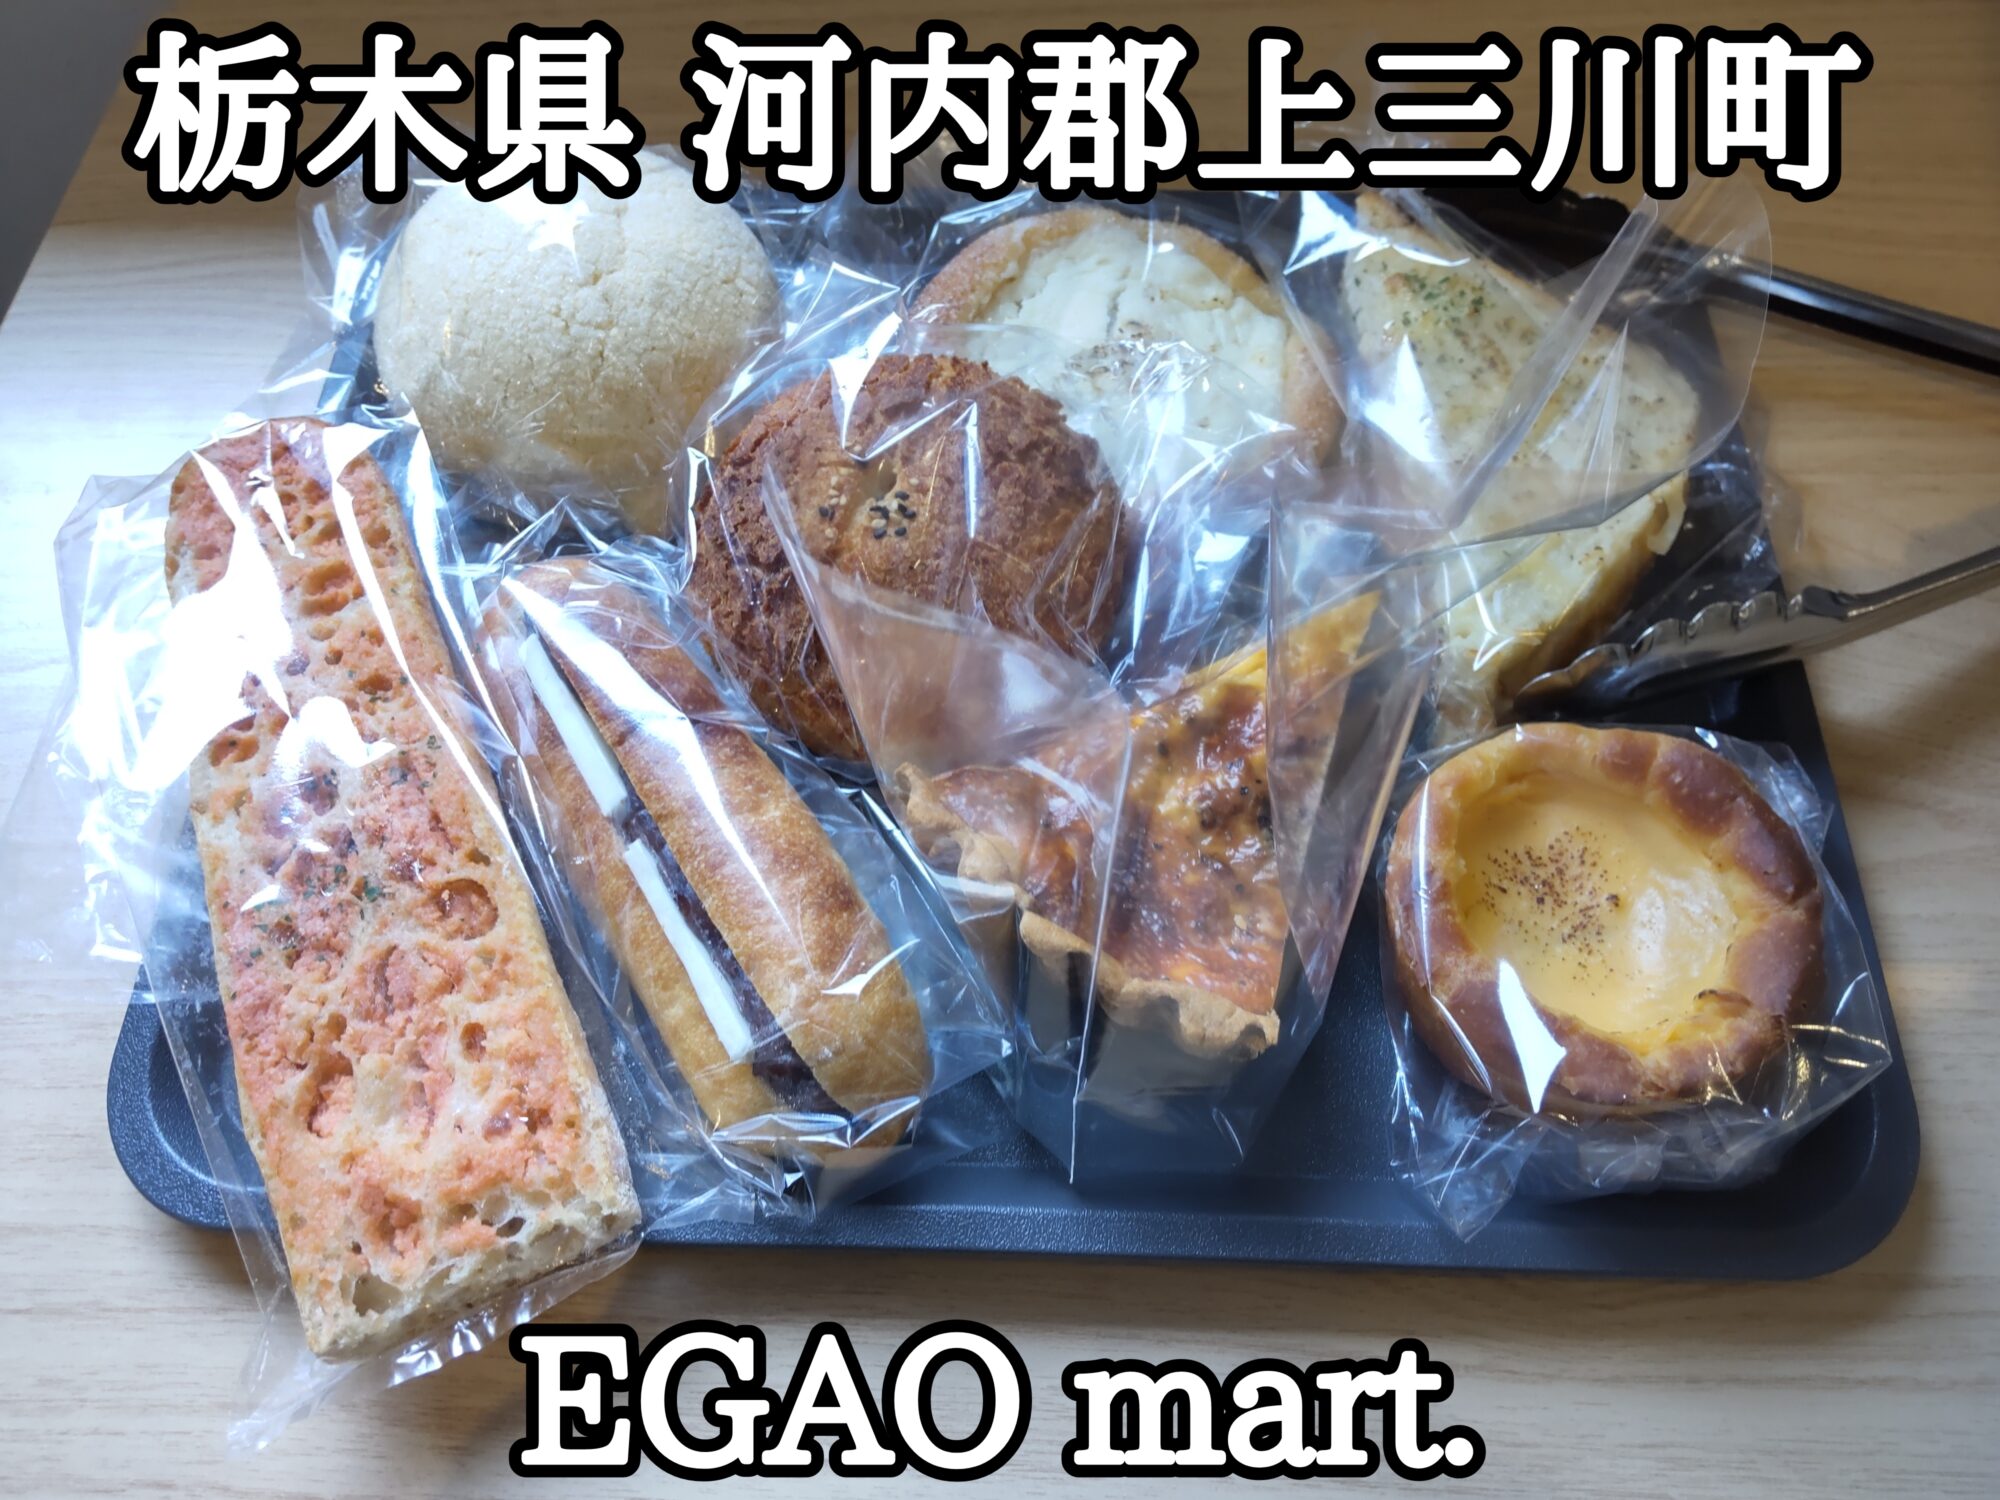 【栃木県】【河内郡上三川町】「EGAO mart.」何れも美味しいパン達と輸入食品・雑貨屋さんがオープンしました